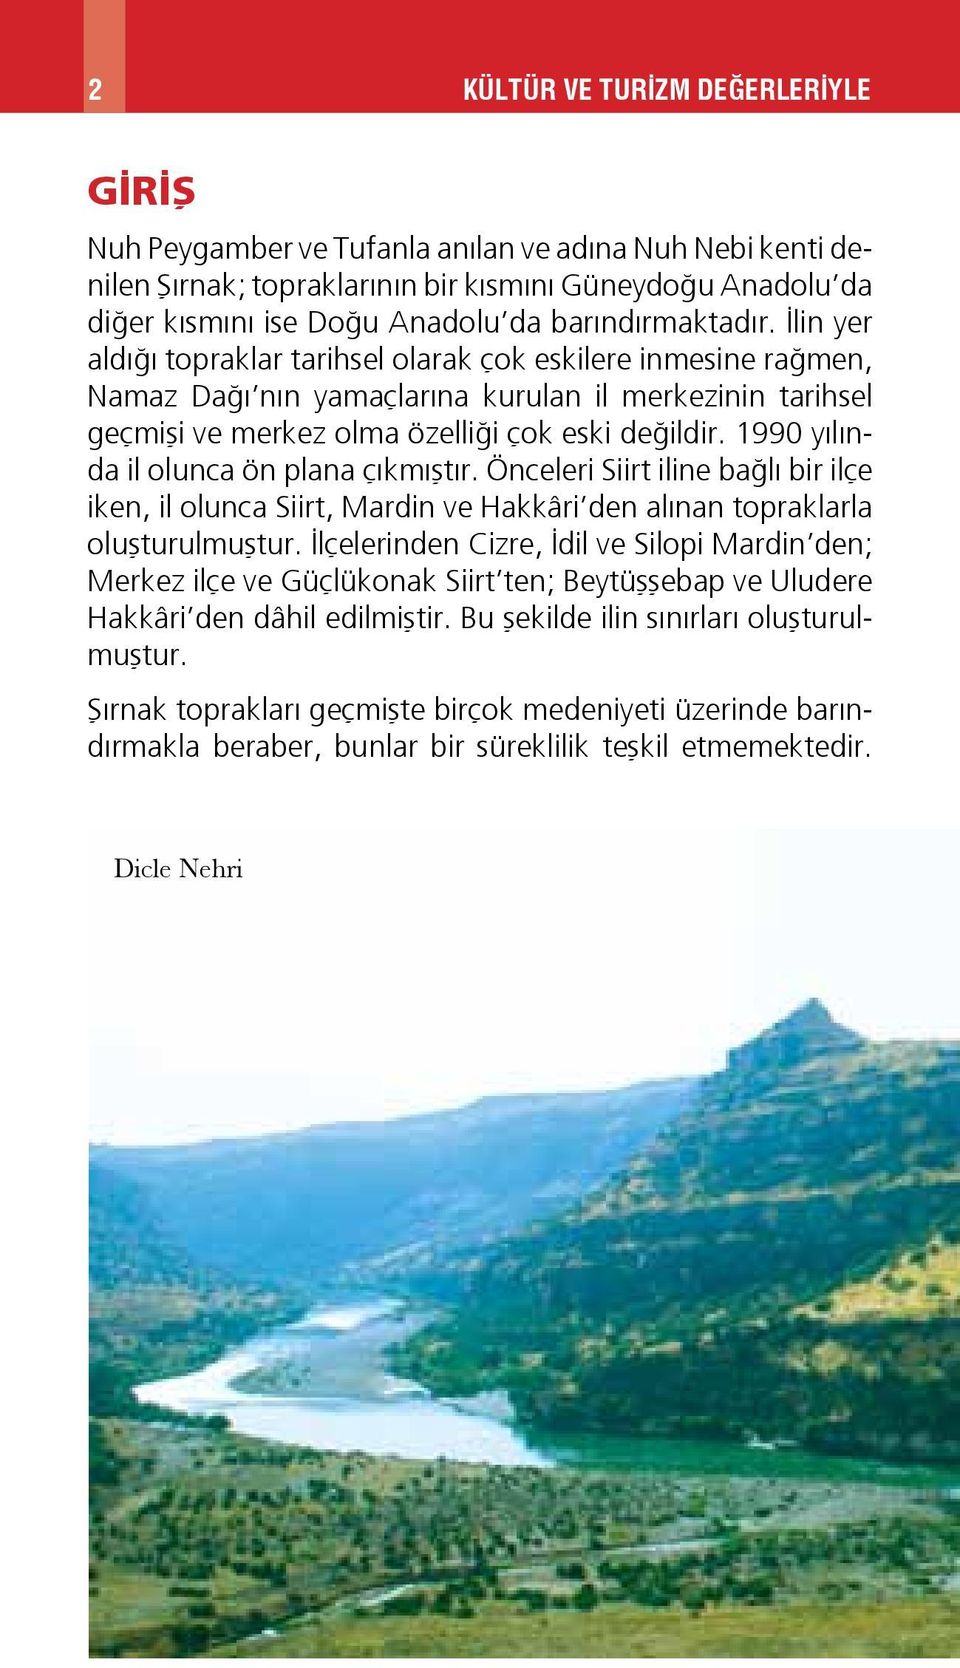 1990 yılında il olunca ön plana çıkmıştır. Önceleri Siirt iline bağlı bir ilçe iken, il olunca Siirt, Mardin ve Hakkâri den alınan topraklarla oluşturulmuştur.